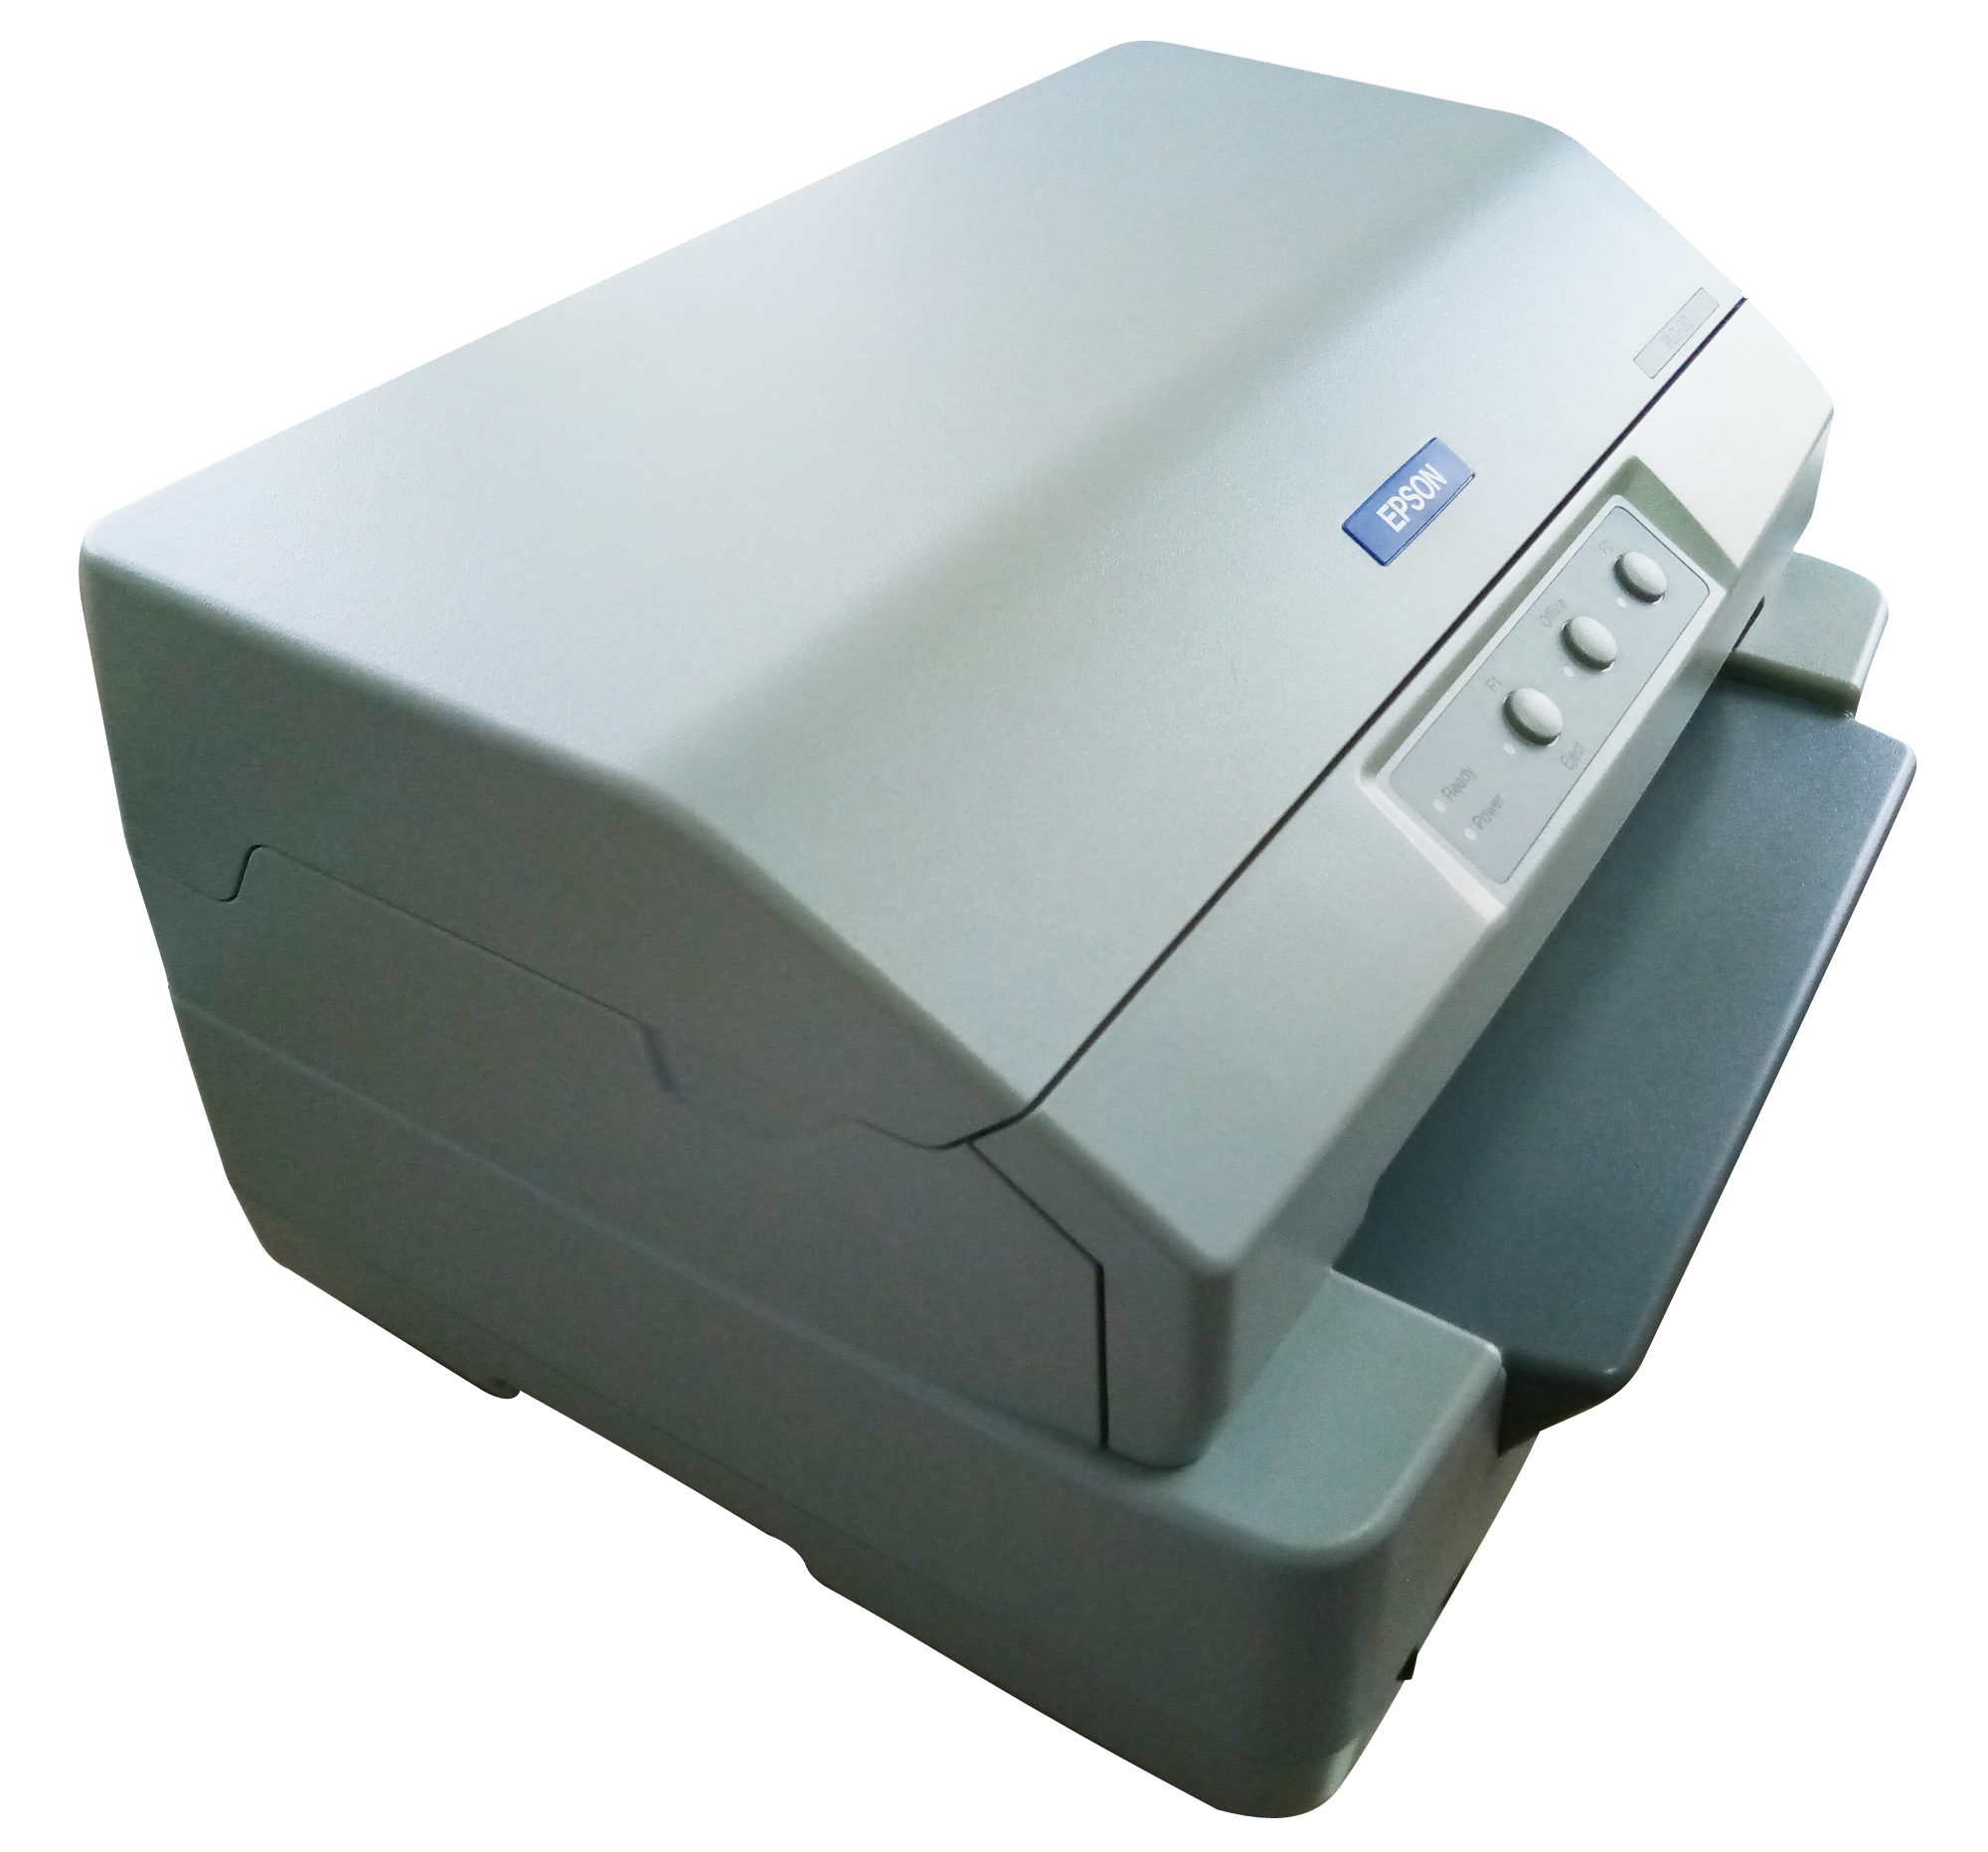 เครื่องพิมพ์เช็ค Cheque printer EPSON PLQ-20 (Rebuilt มือ 2 สภาพภายนอก 80%) รับประกัน 6 เดือนเปลี่ยนเครื่องใหม่ให้กรณีเครื่องเสีย พร้อมโปรแกรมพิมพ์เช็ค